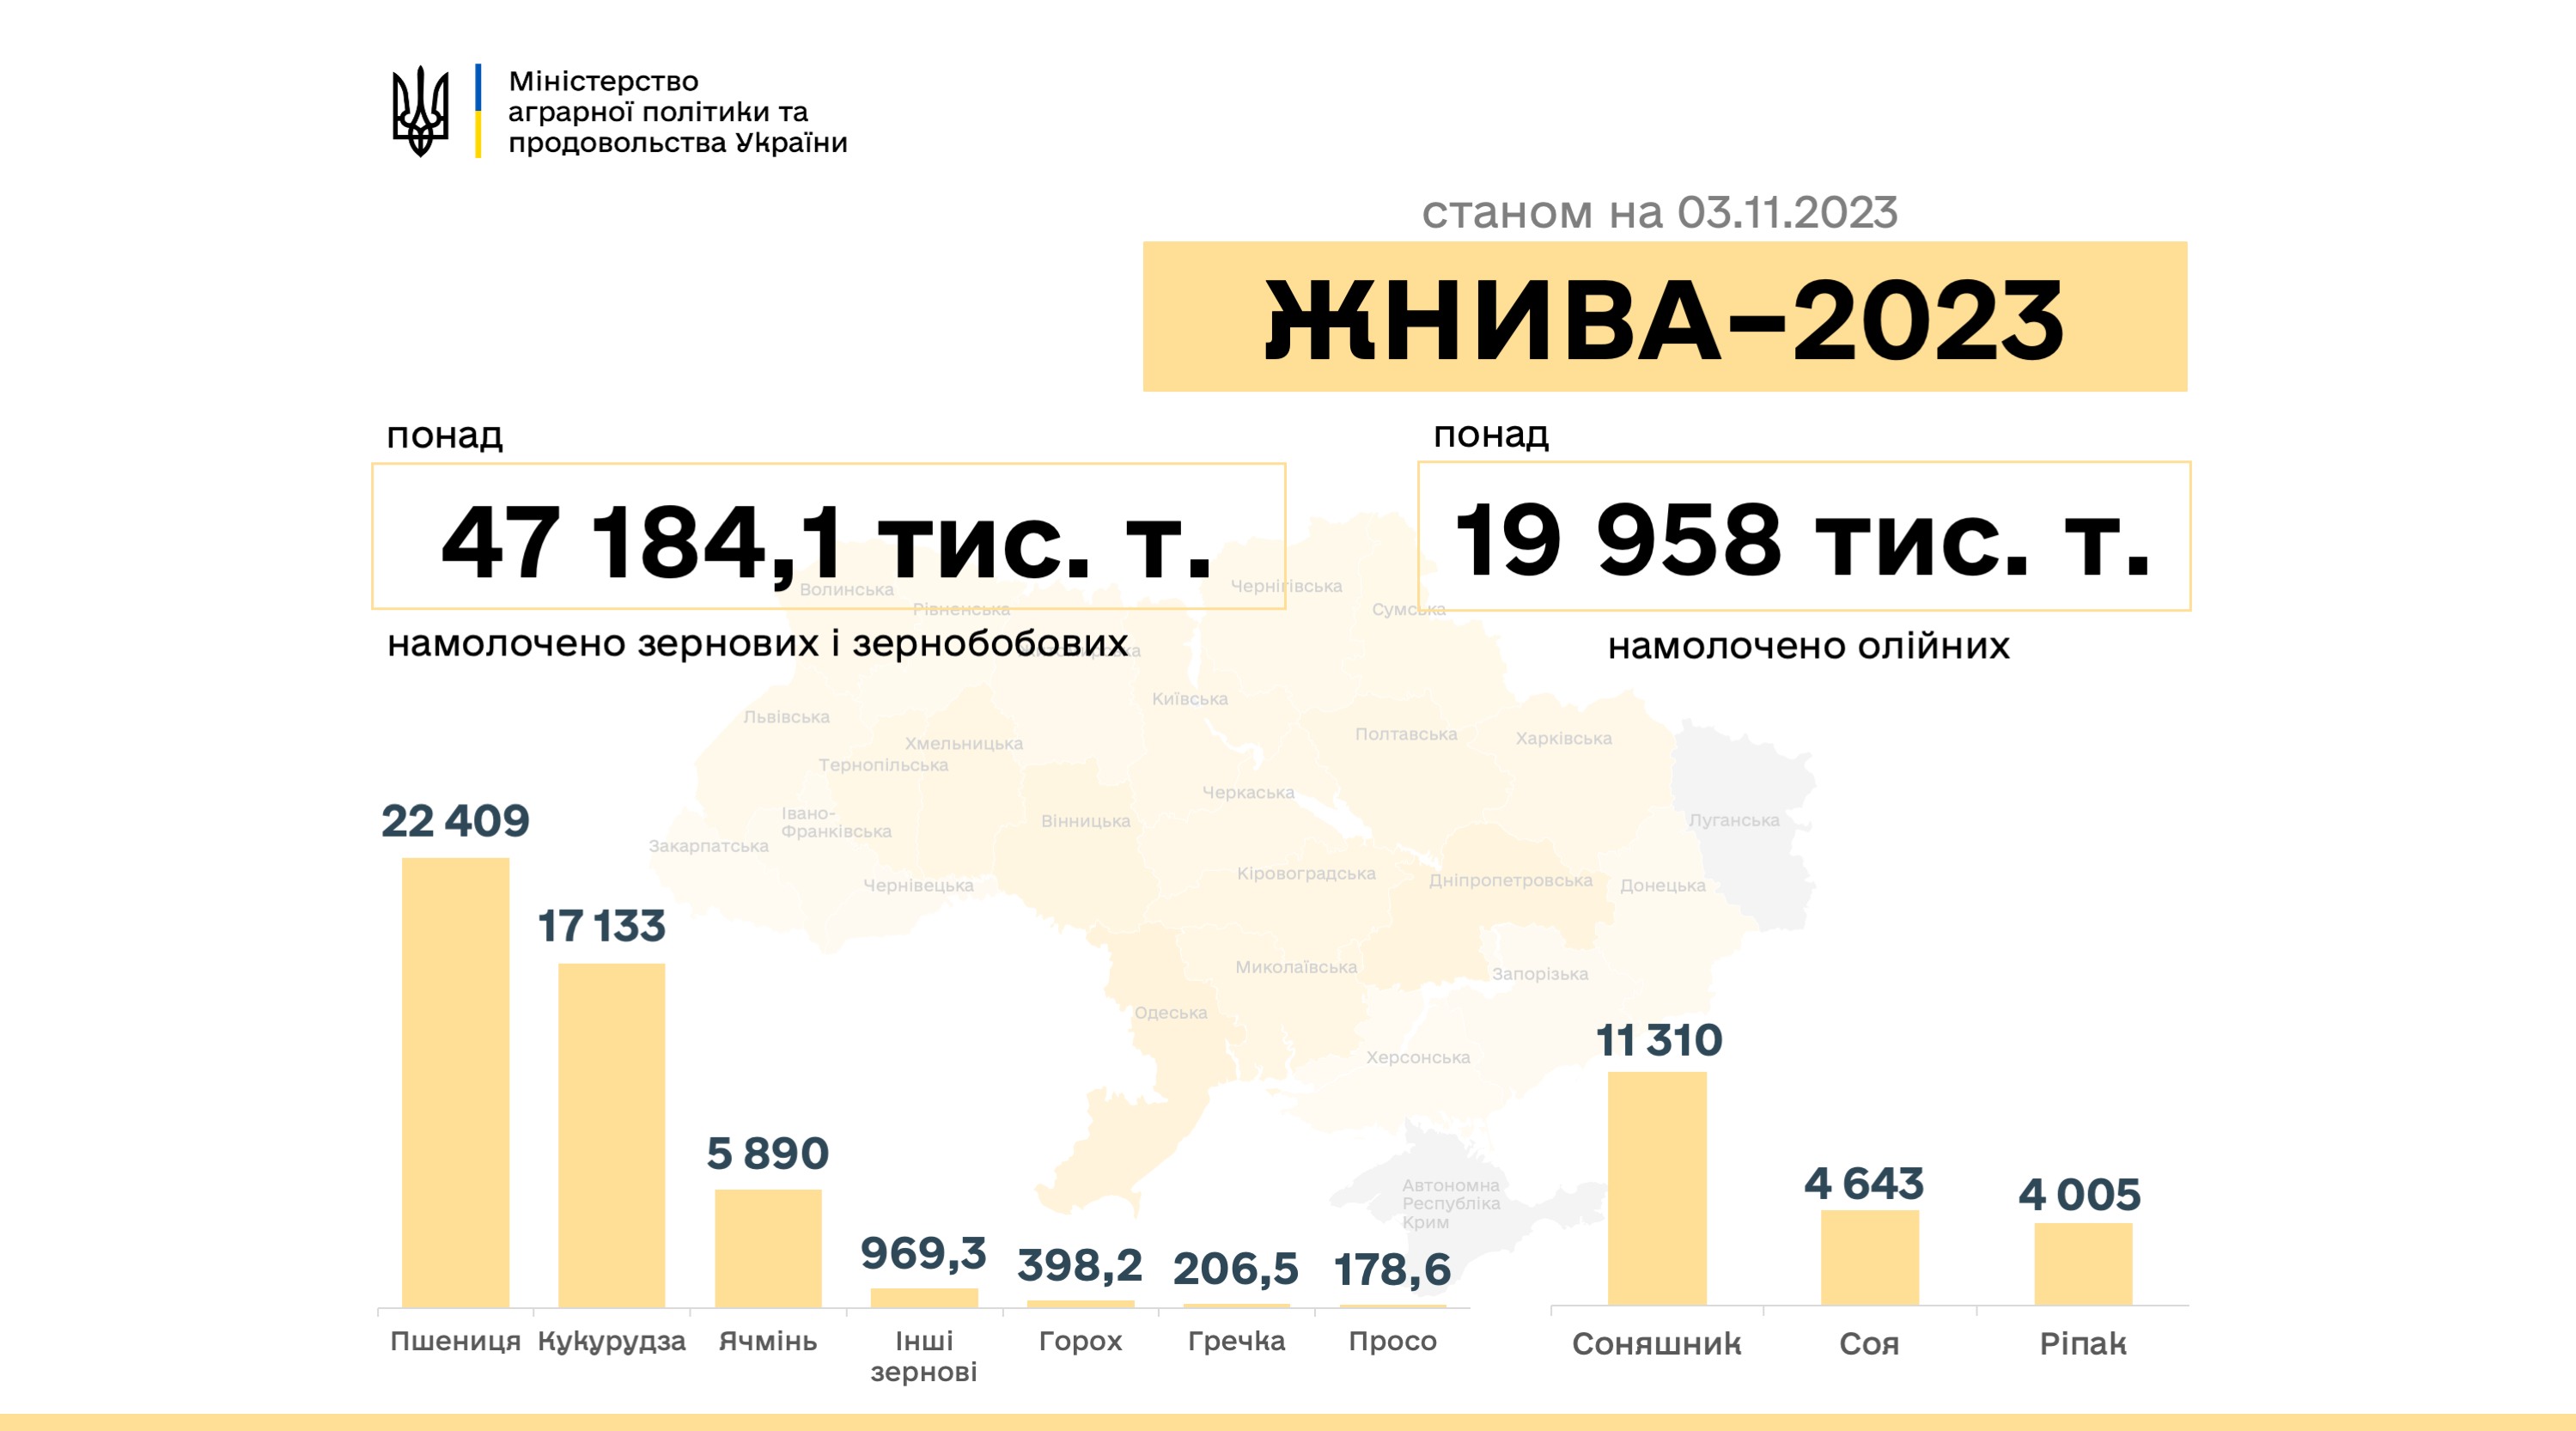 Вінницька область зібрала найбільшу кількість зерна в Україні